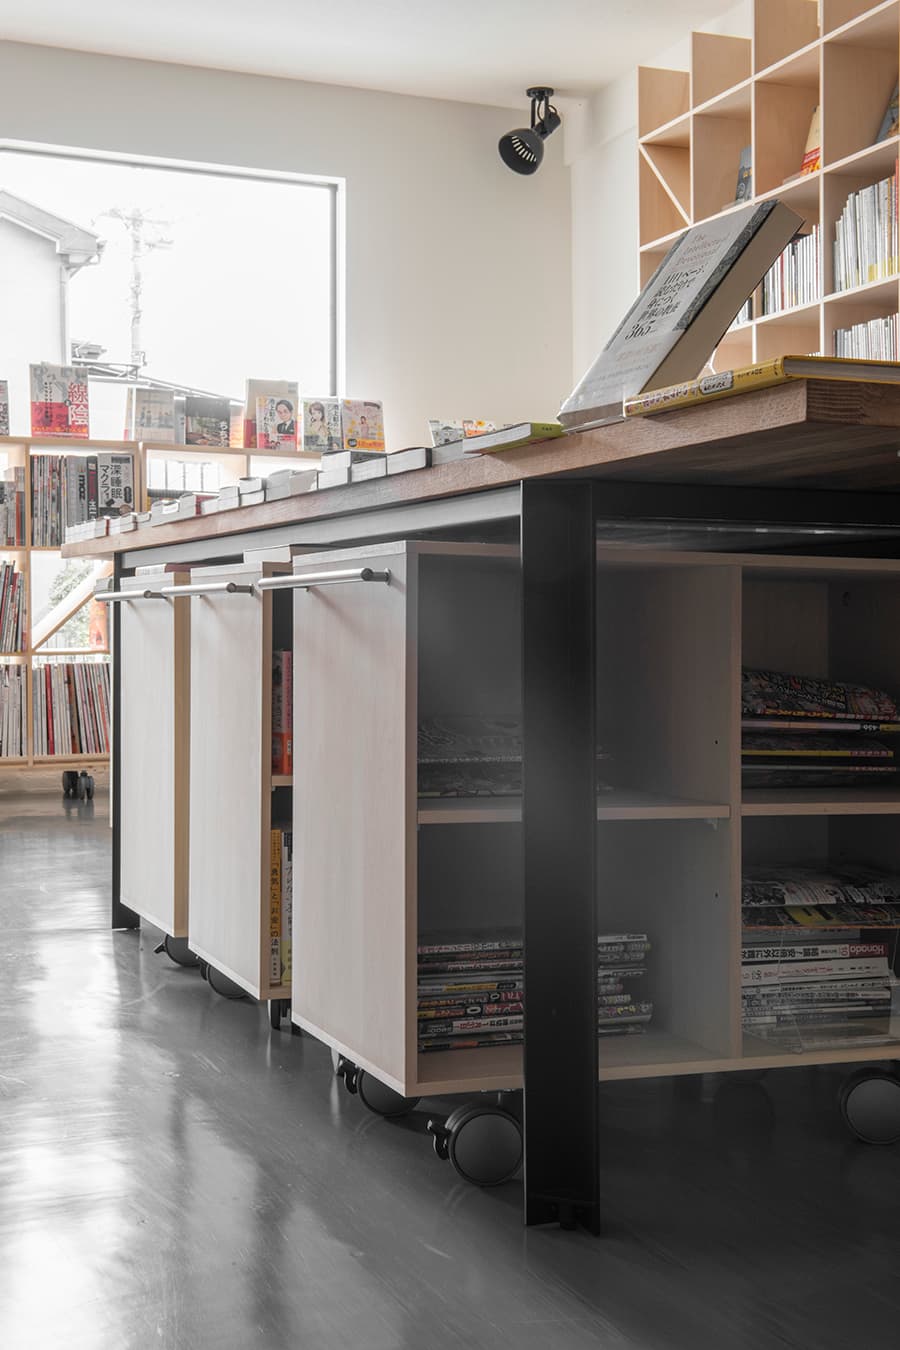 移動式本棚を本屋さんのディスプレイ兼収納に導入した事例